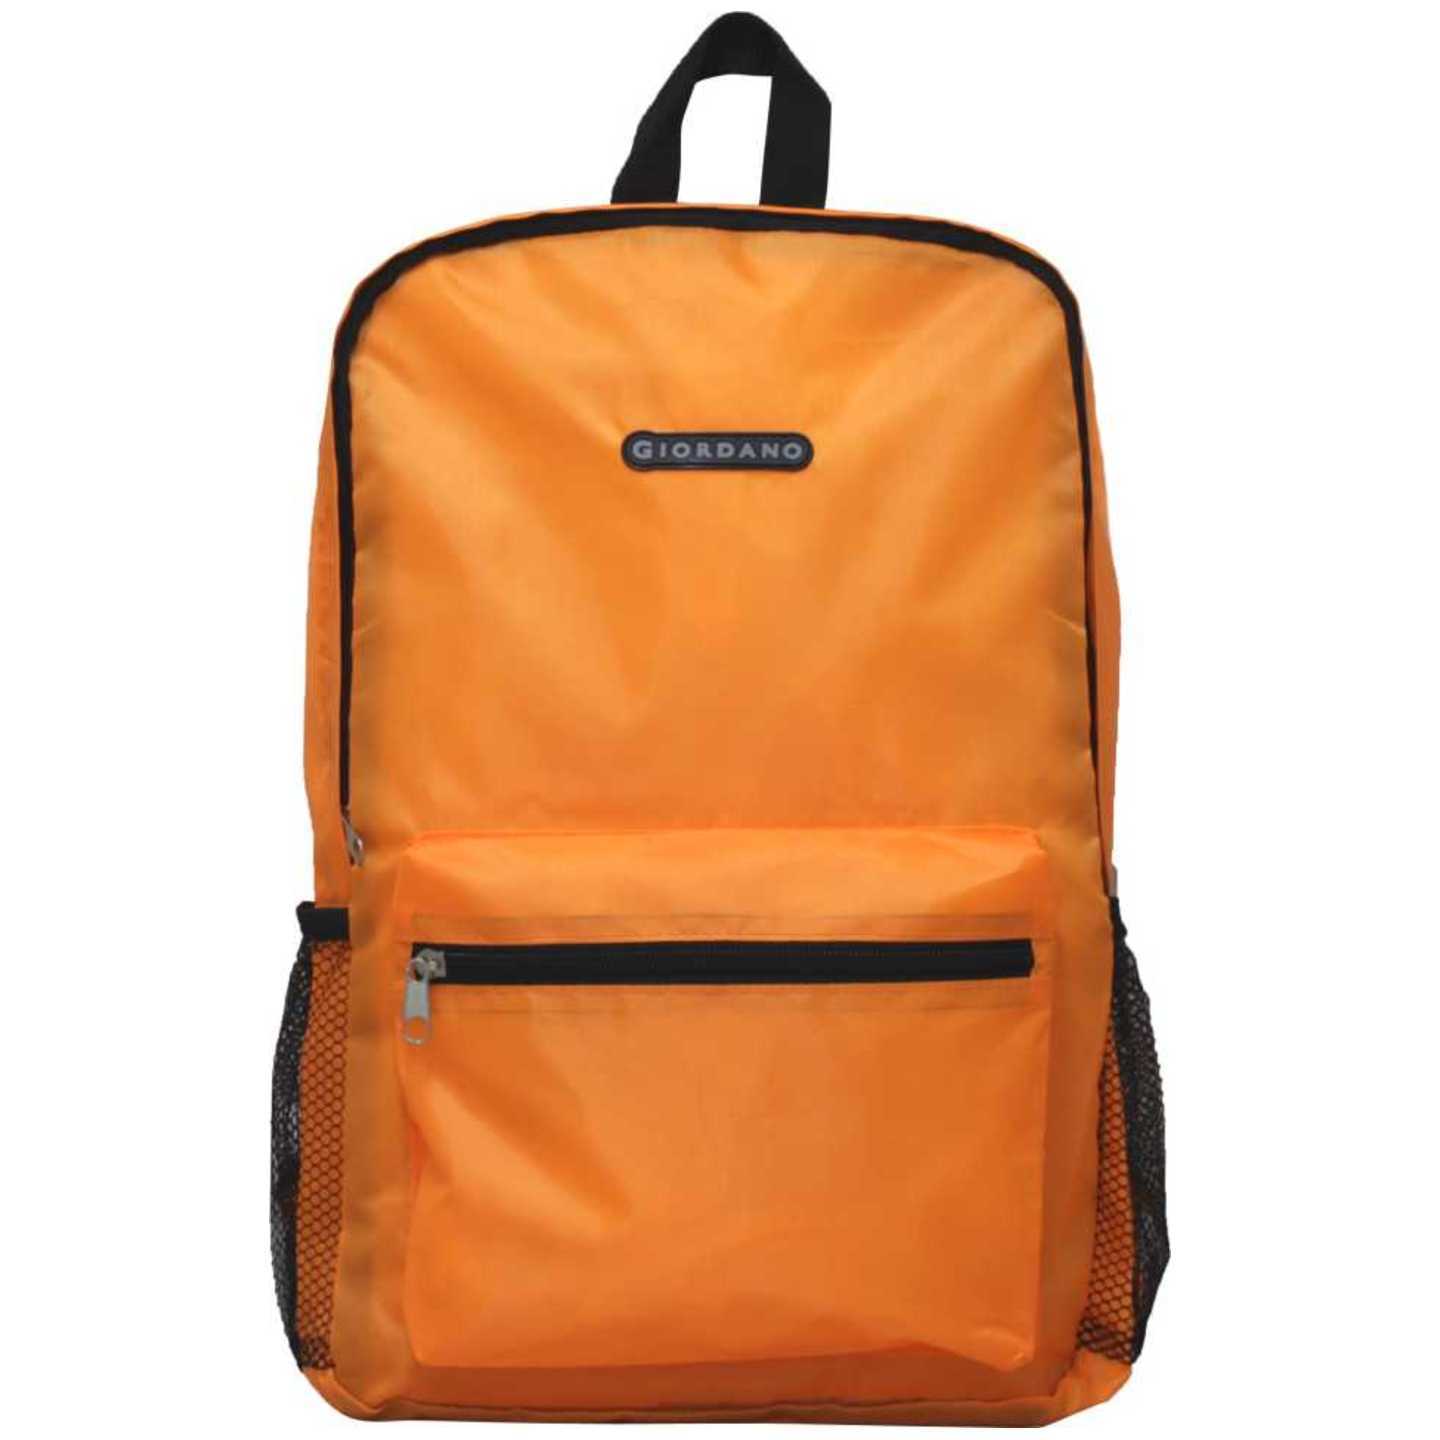 Giordano Foldable Backpack